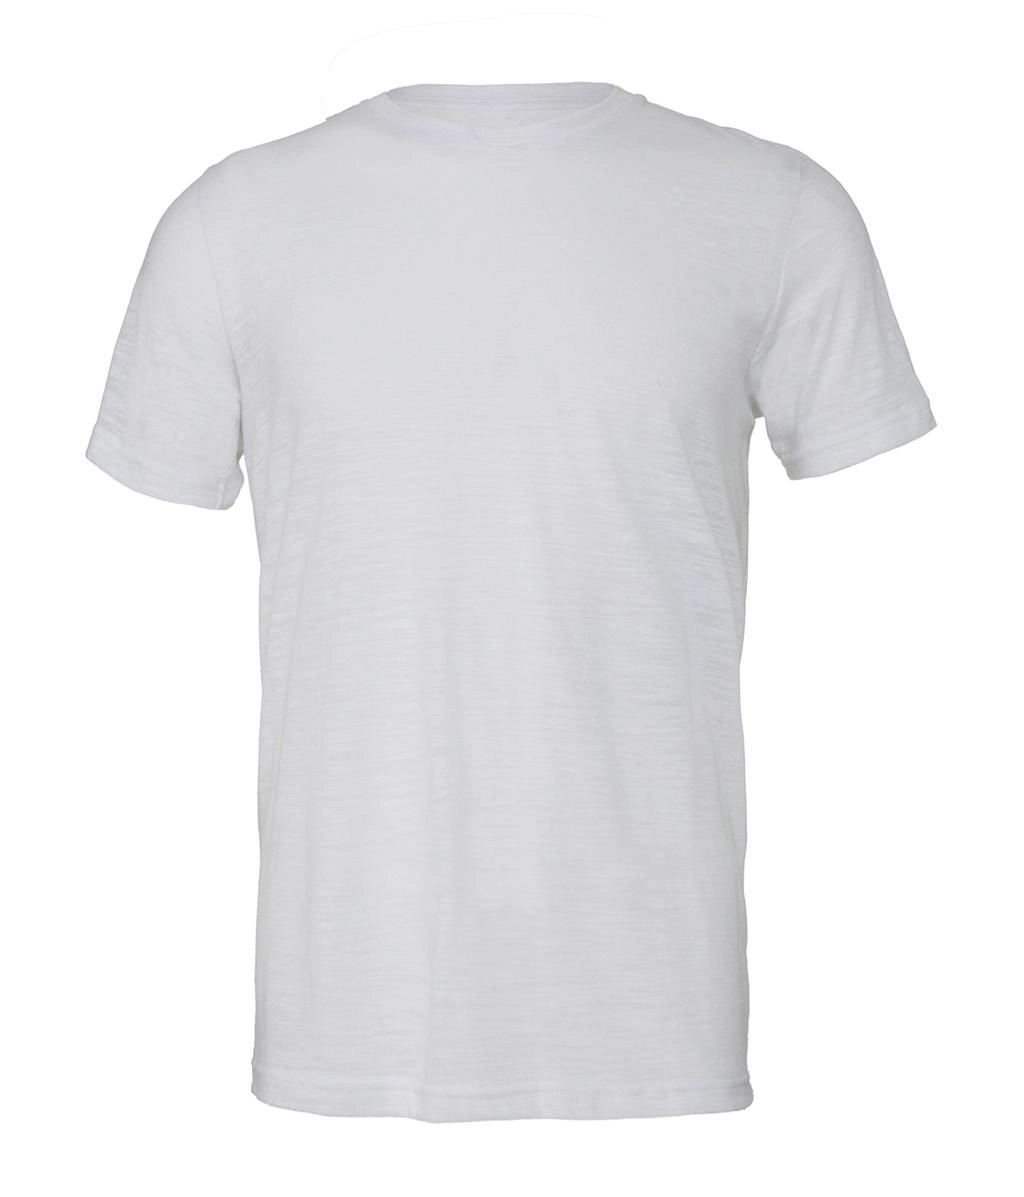 Unisex Poly-Cotton T-Shirt zum Besticken und Bedrucken in der Farbe White Marble mit Ihren Logo, Schriftzug oder Motiv.